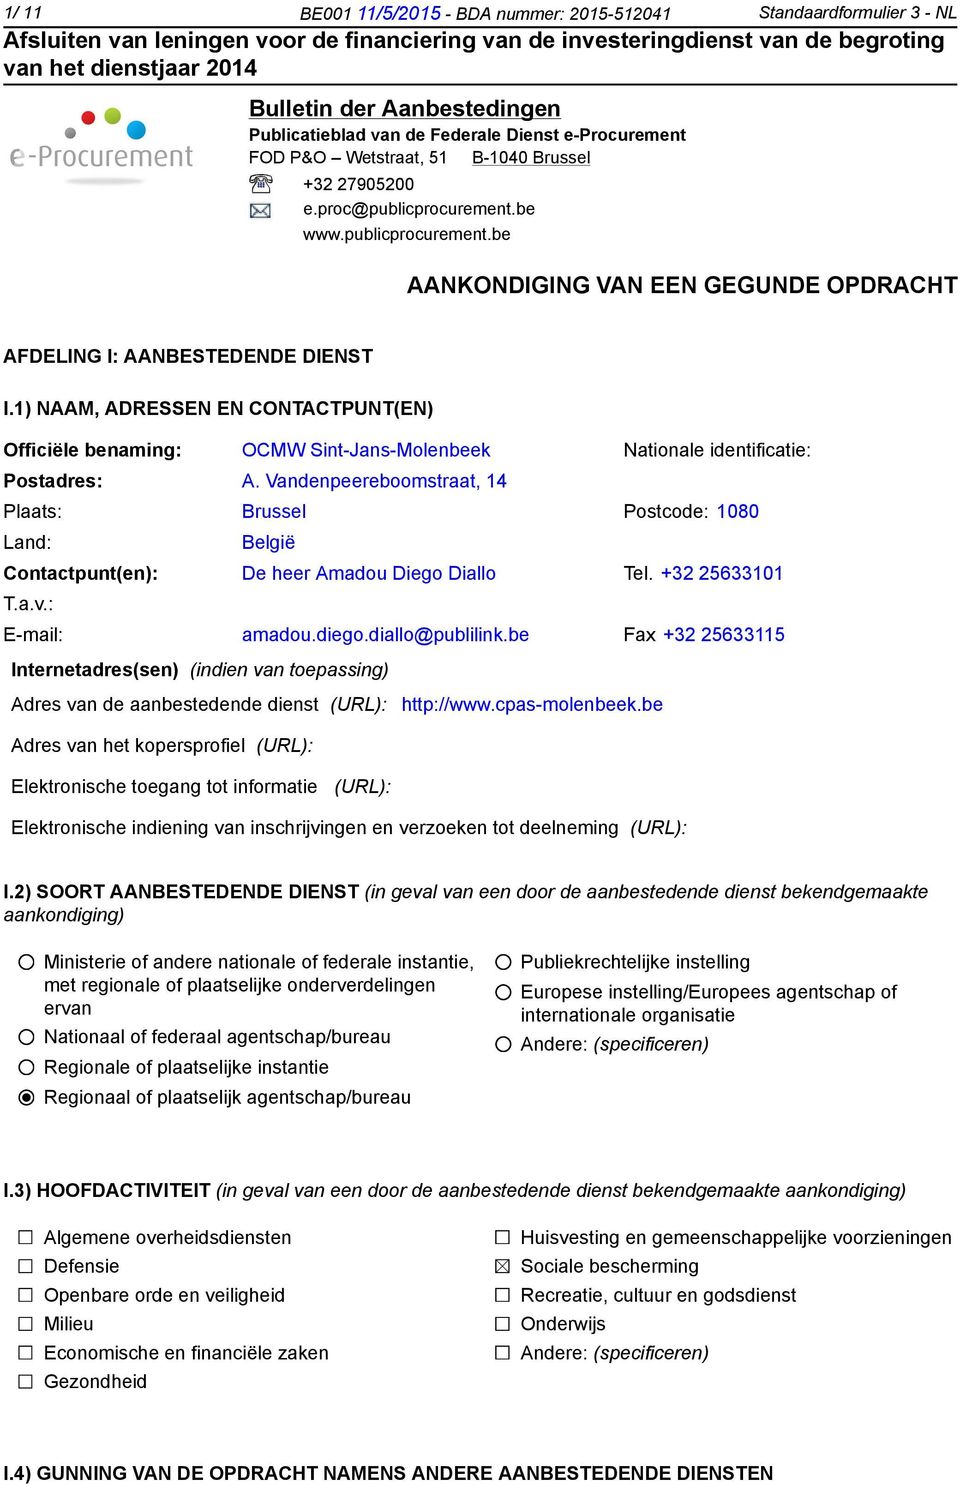 1) NAAM, ADRESSEN EN CONTACTPUNT(EN) Officiële benaming: OCMW Sint-Jans-Molenbeek Nationale identificatie: Postadres: A.